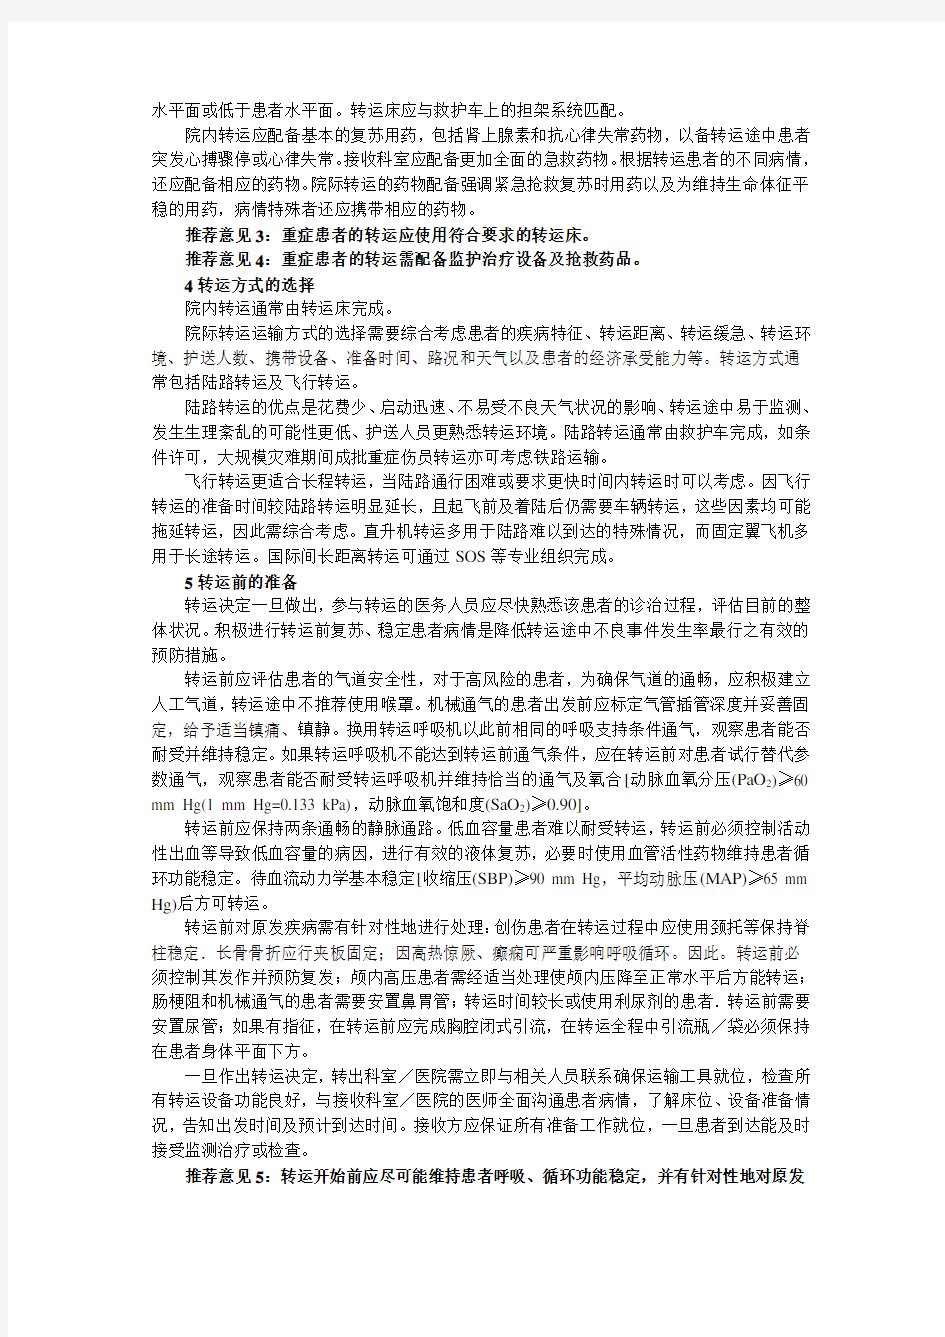 中国重症患者转运指南(2010)_(草案)